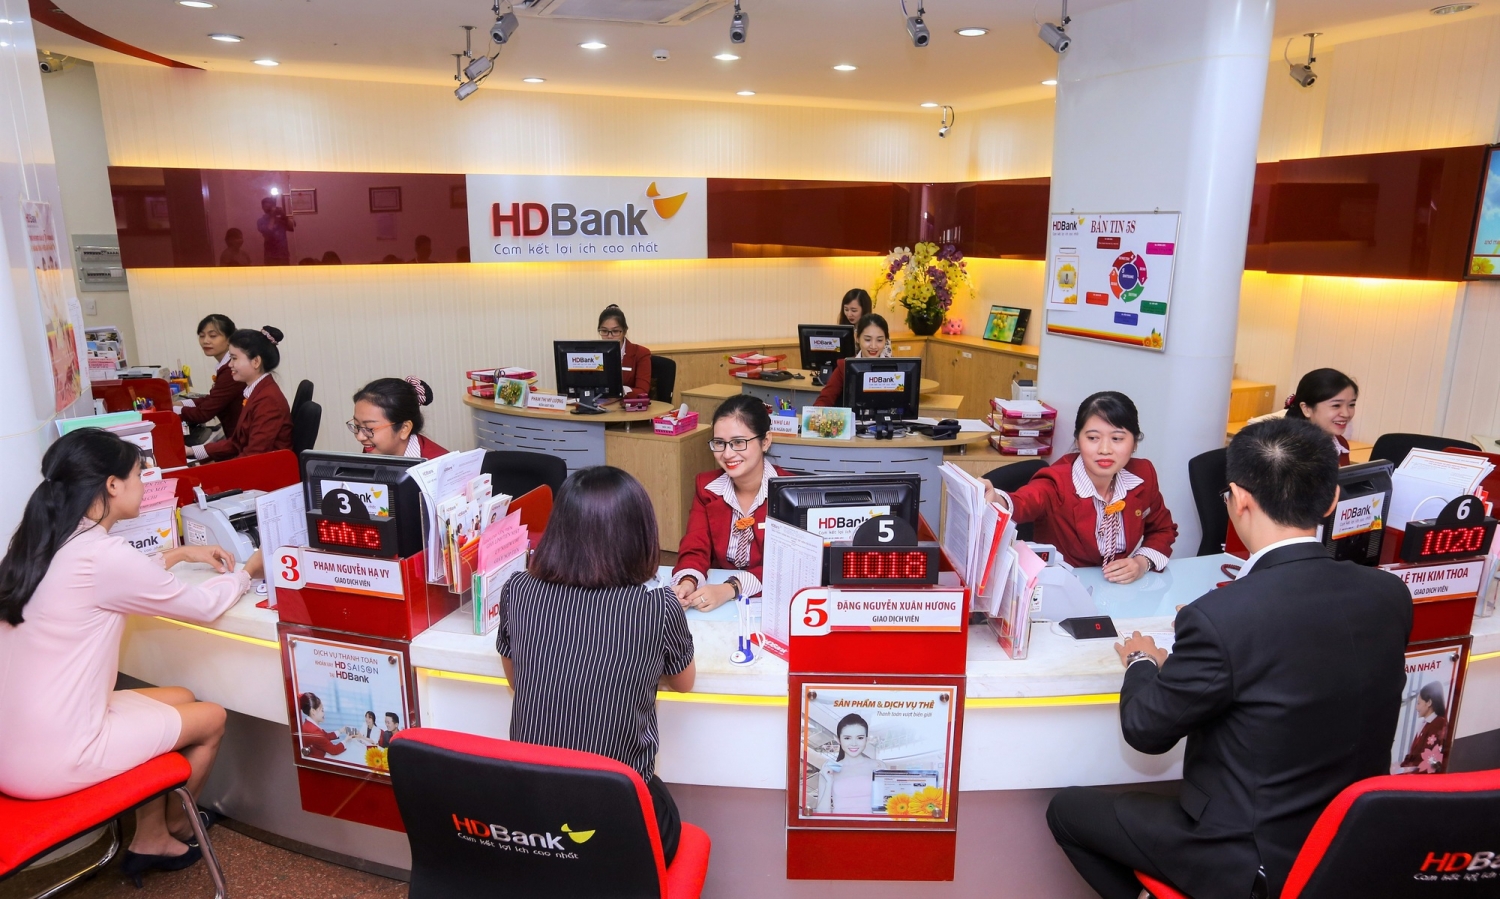 Tin ngân hàng ngày 24/12: VietinBank rao bán hơn 450 khoản vay tiêu dùng không tài sản bảo đảm